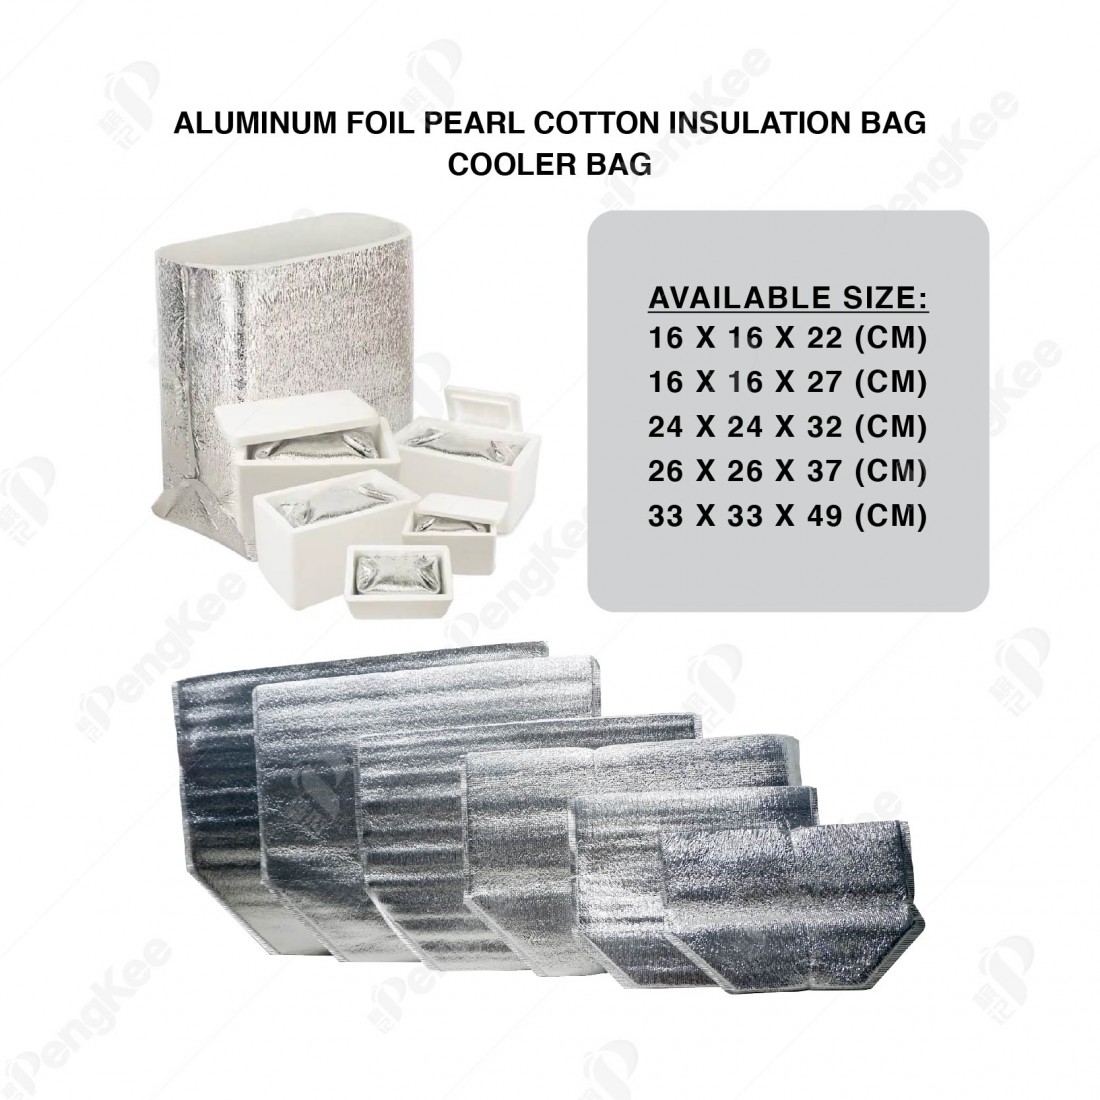 ALUMINUM FOIL PEARL COTTON INSULATION BAG (L16 X W16 X H22CM X3MM) 铝箱珍珠保温袋 (20'S)